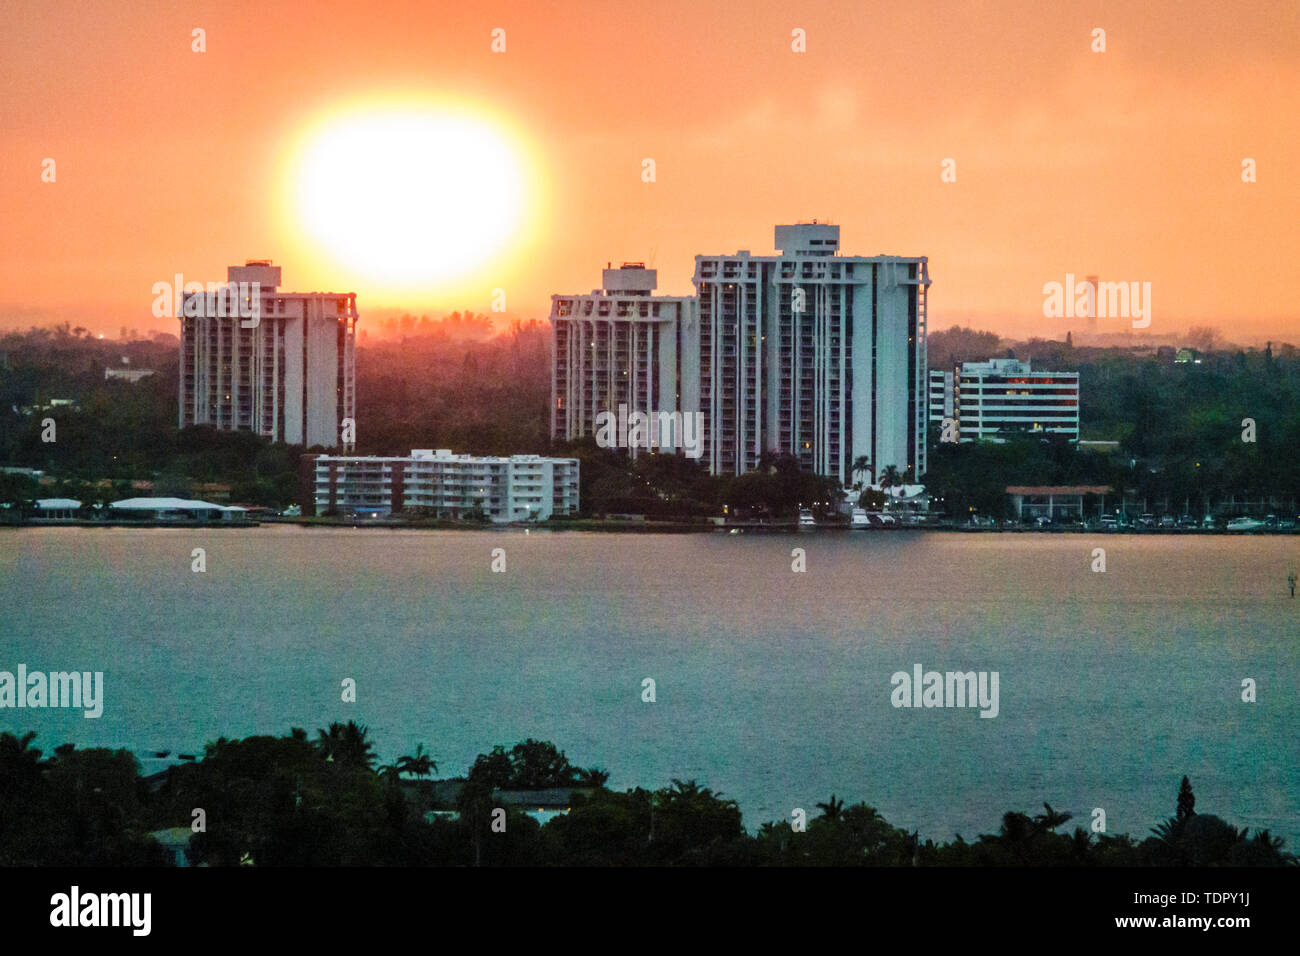 Miami Florida, Sonnenuntergang an der Biscayne Bay, Skyline der Stadt, Uferpromenade, Wohngebäude, trüber Himmel, untergehende Sonne, FL190505013 Stockfoto